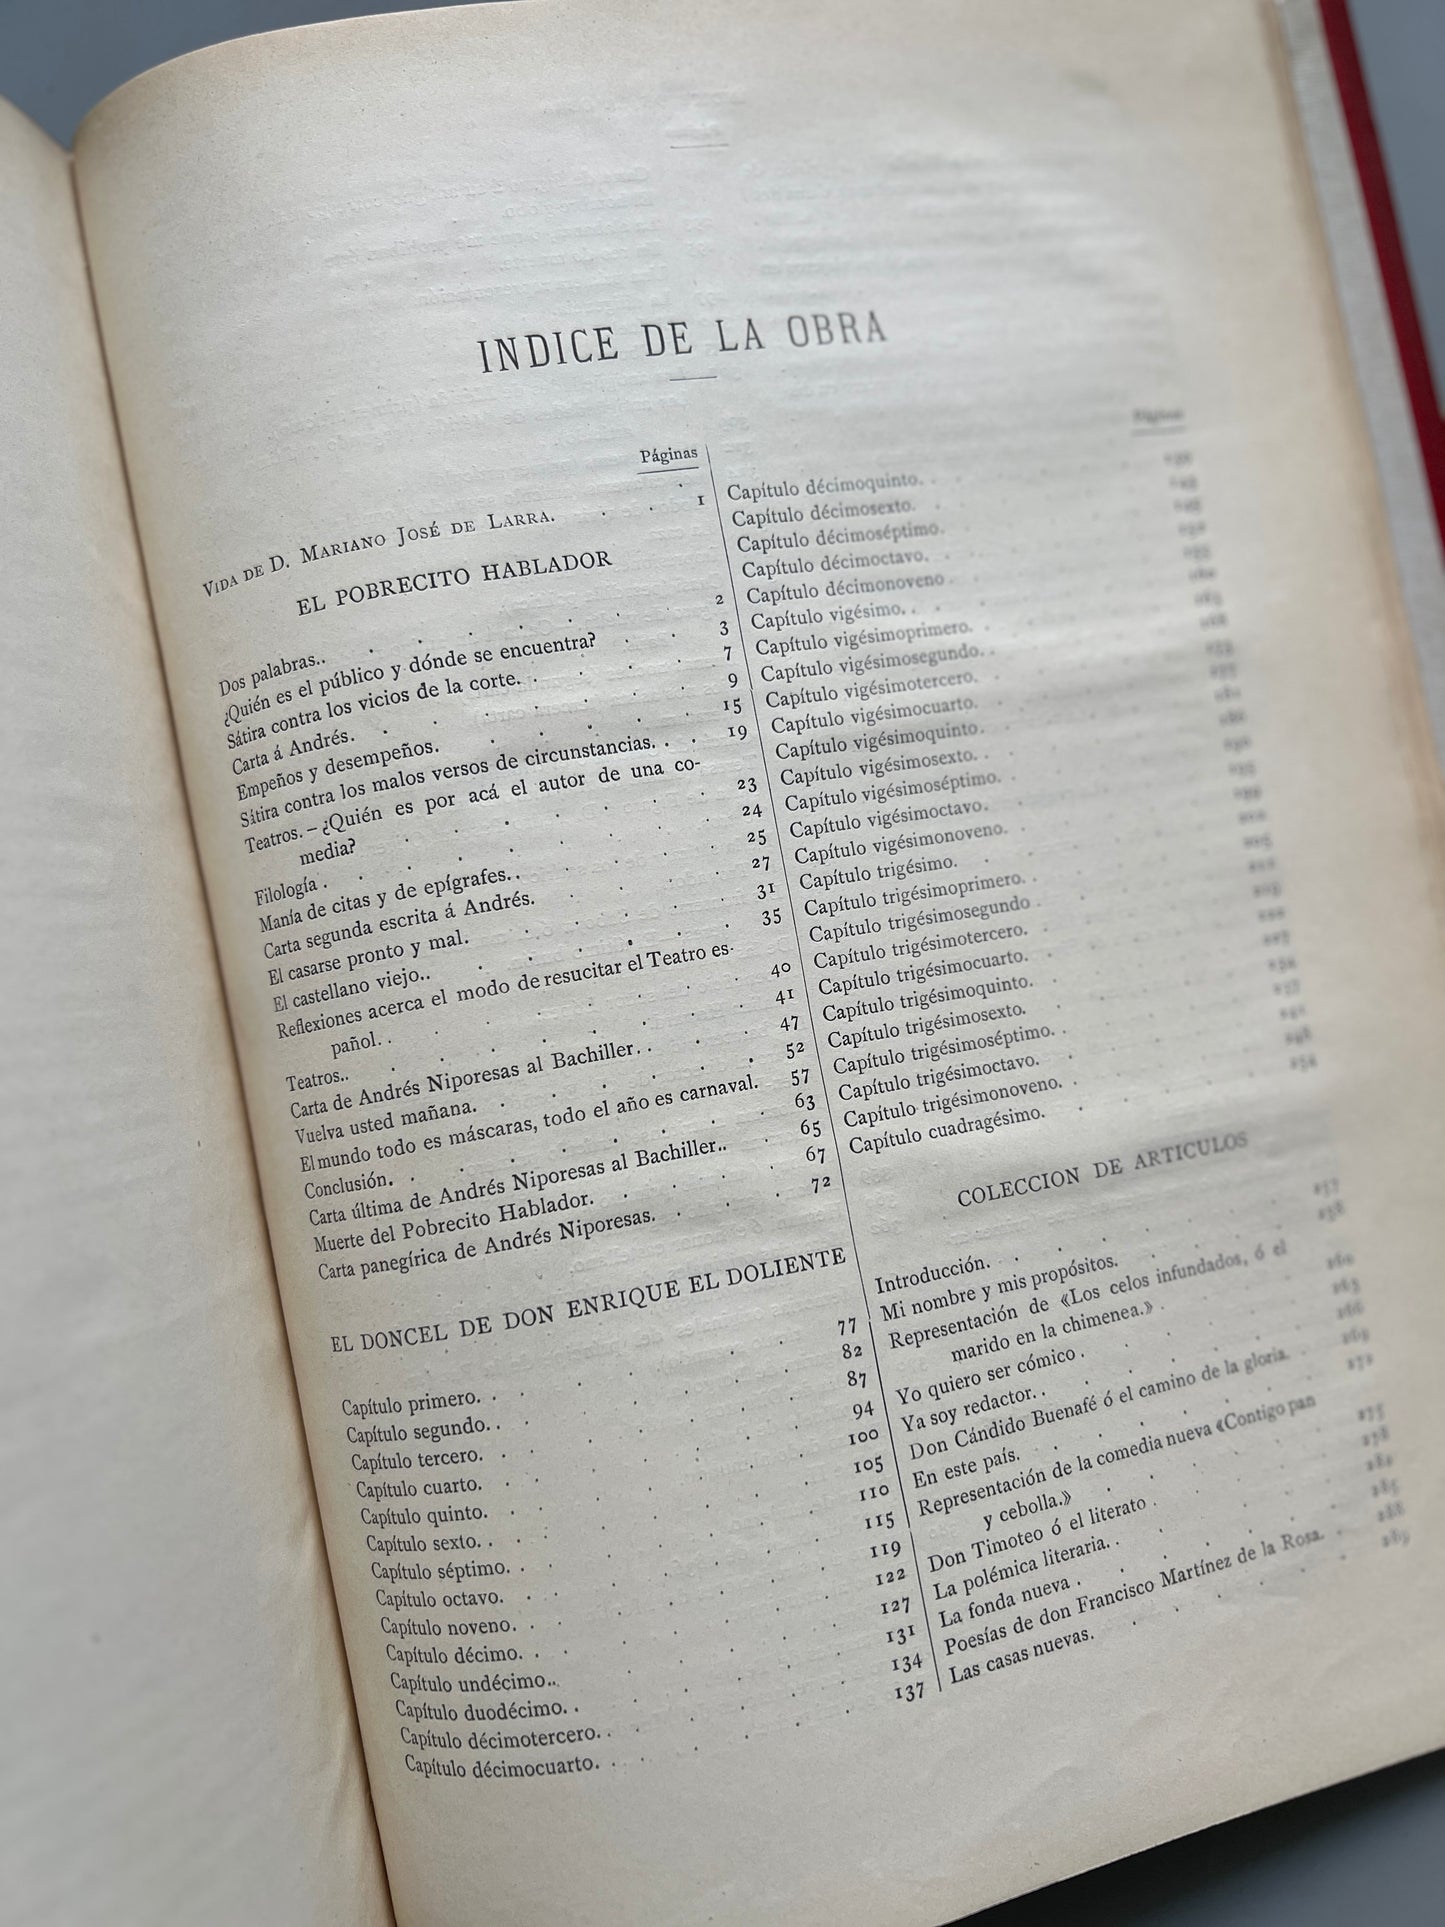 Obras completas de D. Mariano José de Larra (Fígaro) - Montaner y Simón, 1886